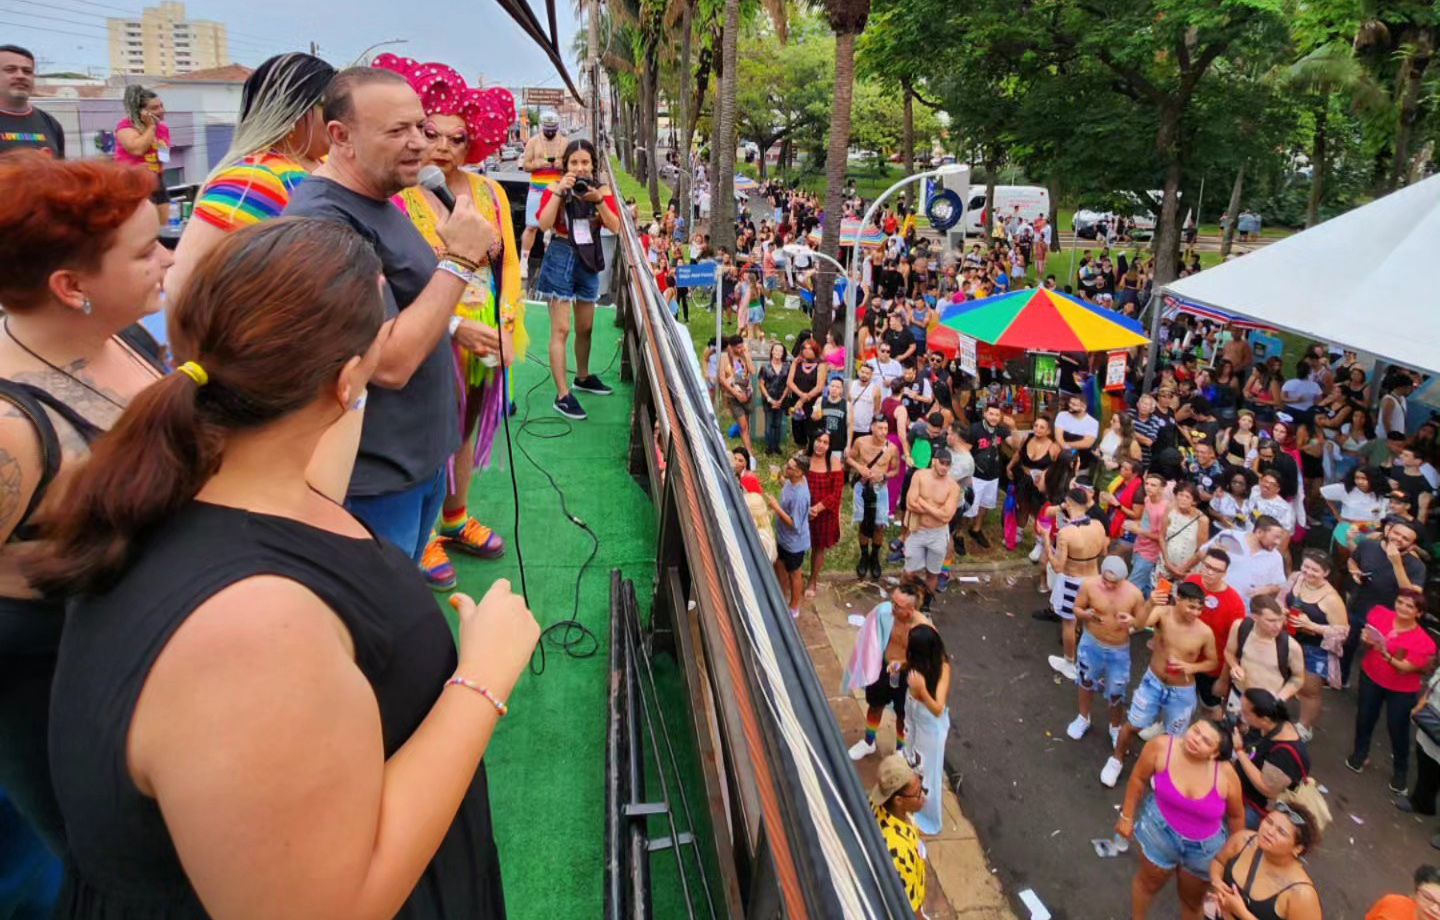 11ª Parada do Orgulho LGBTQIA+ de São Pedro será neste domingo (18